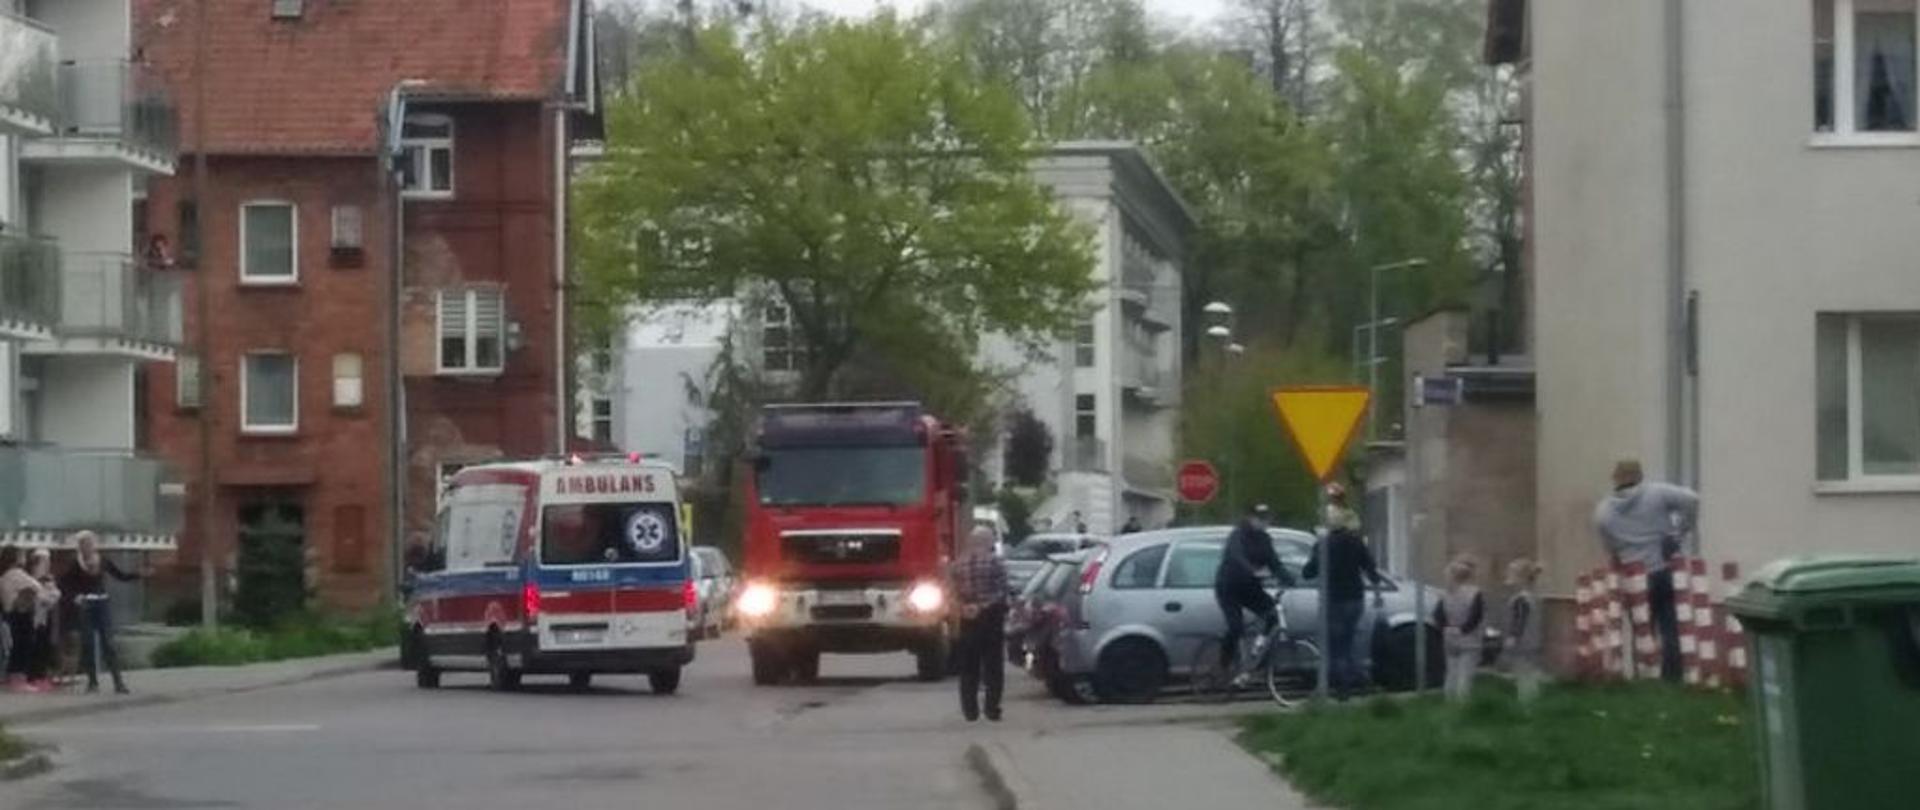 W tle widać samochód ratowniczo-gaśniczy oraz ambulans na ul. Marii Skłodowskiej-Curie w Ostródzie.